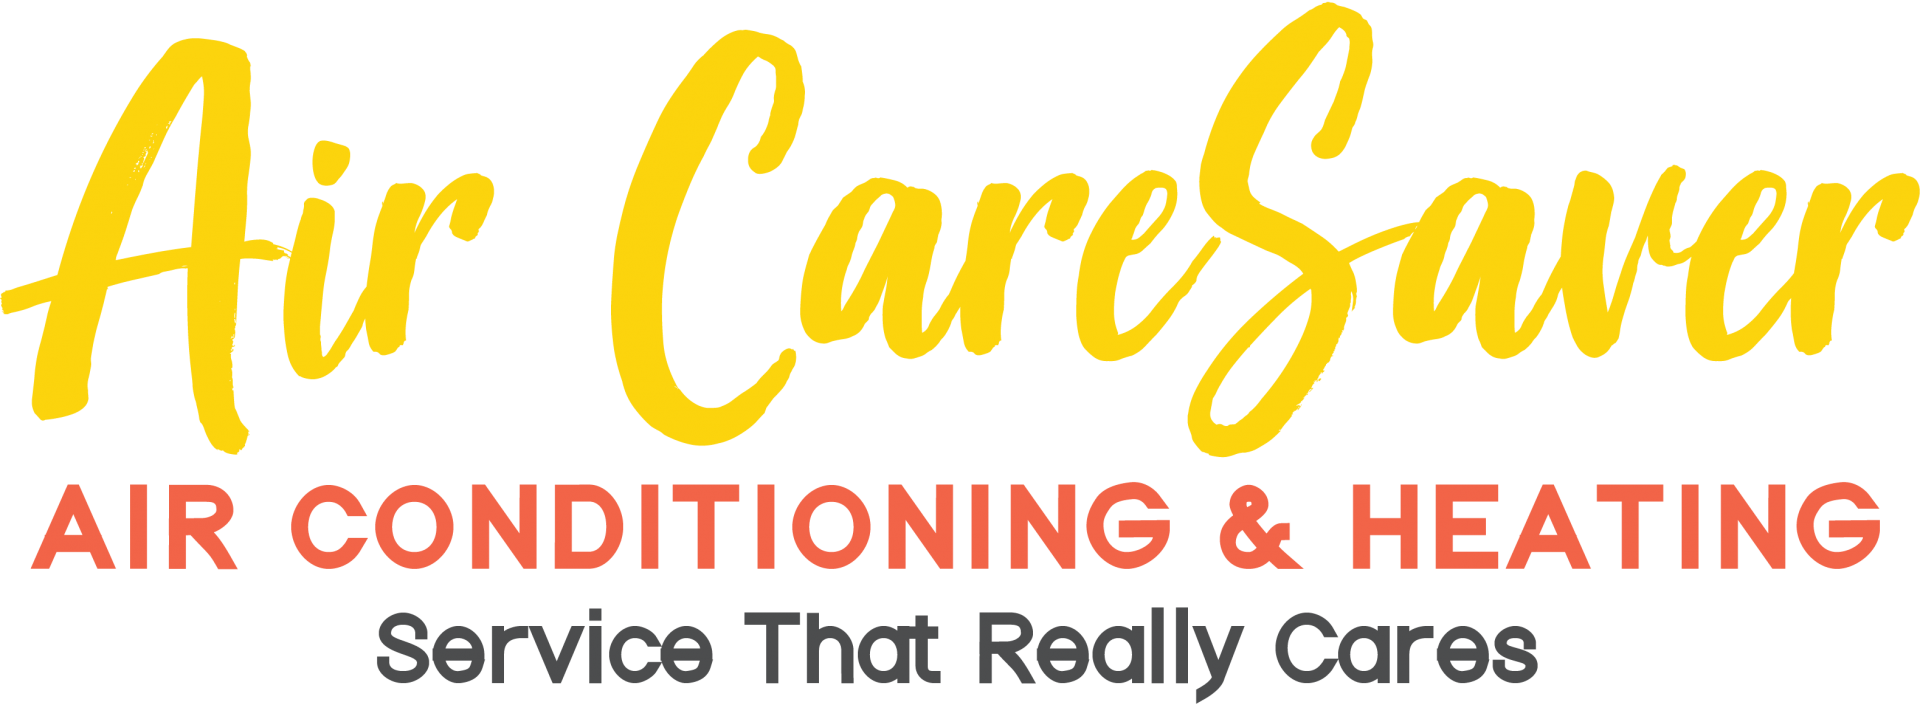 Air CareSaver Inc company logo